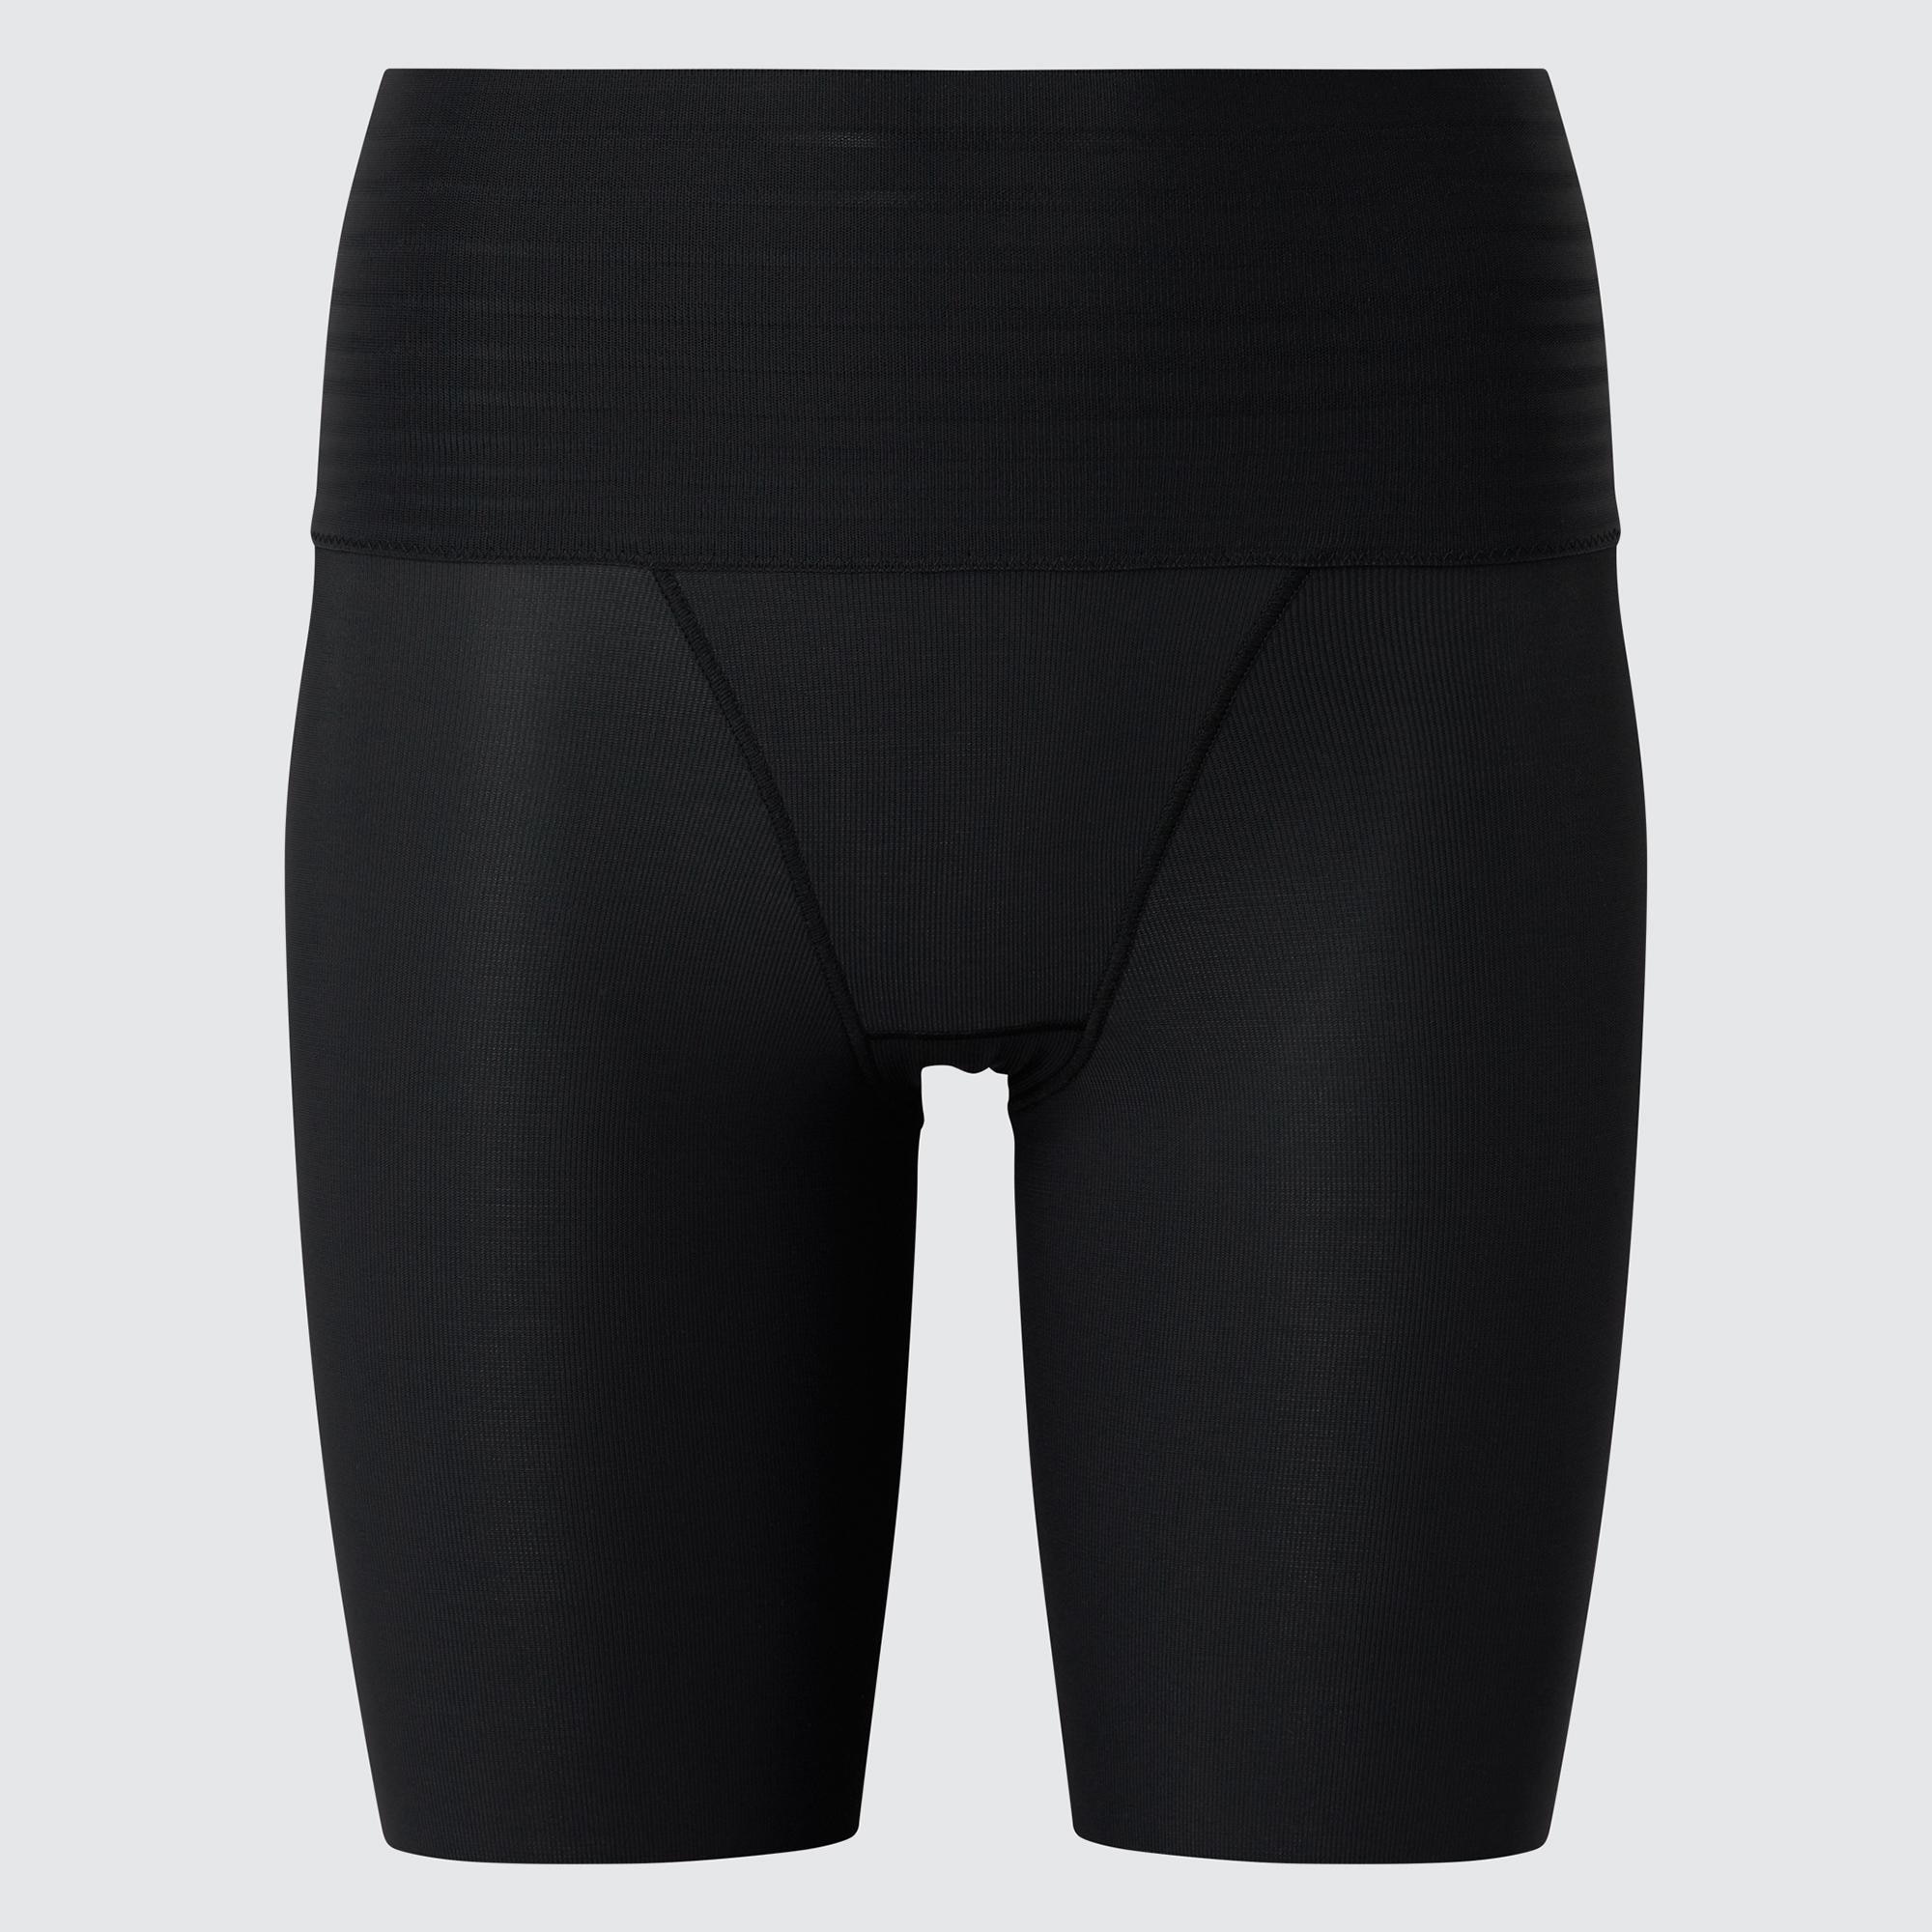 UNIQLO Masterpiece, WOMEN AIRism Body Shaper Non-Lined Half Shorts